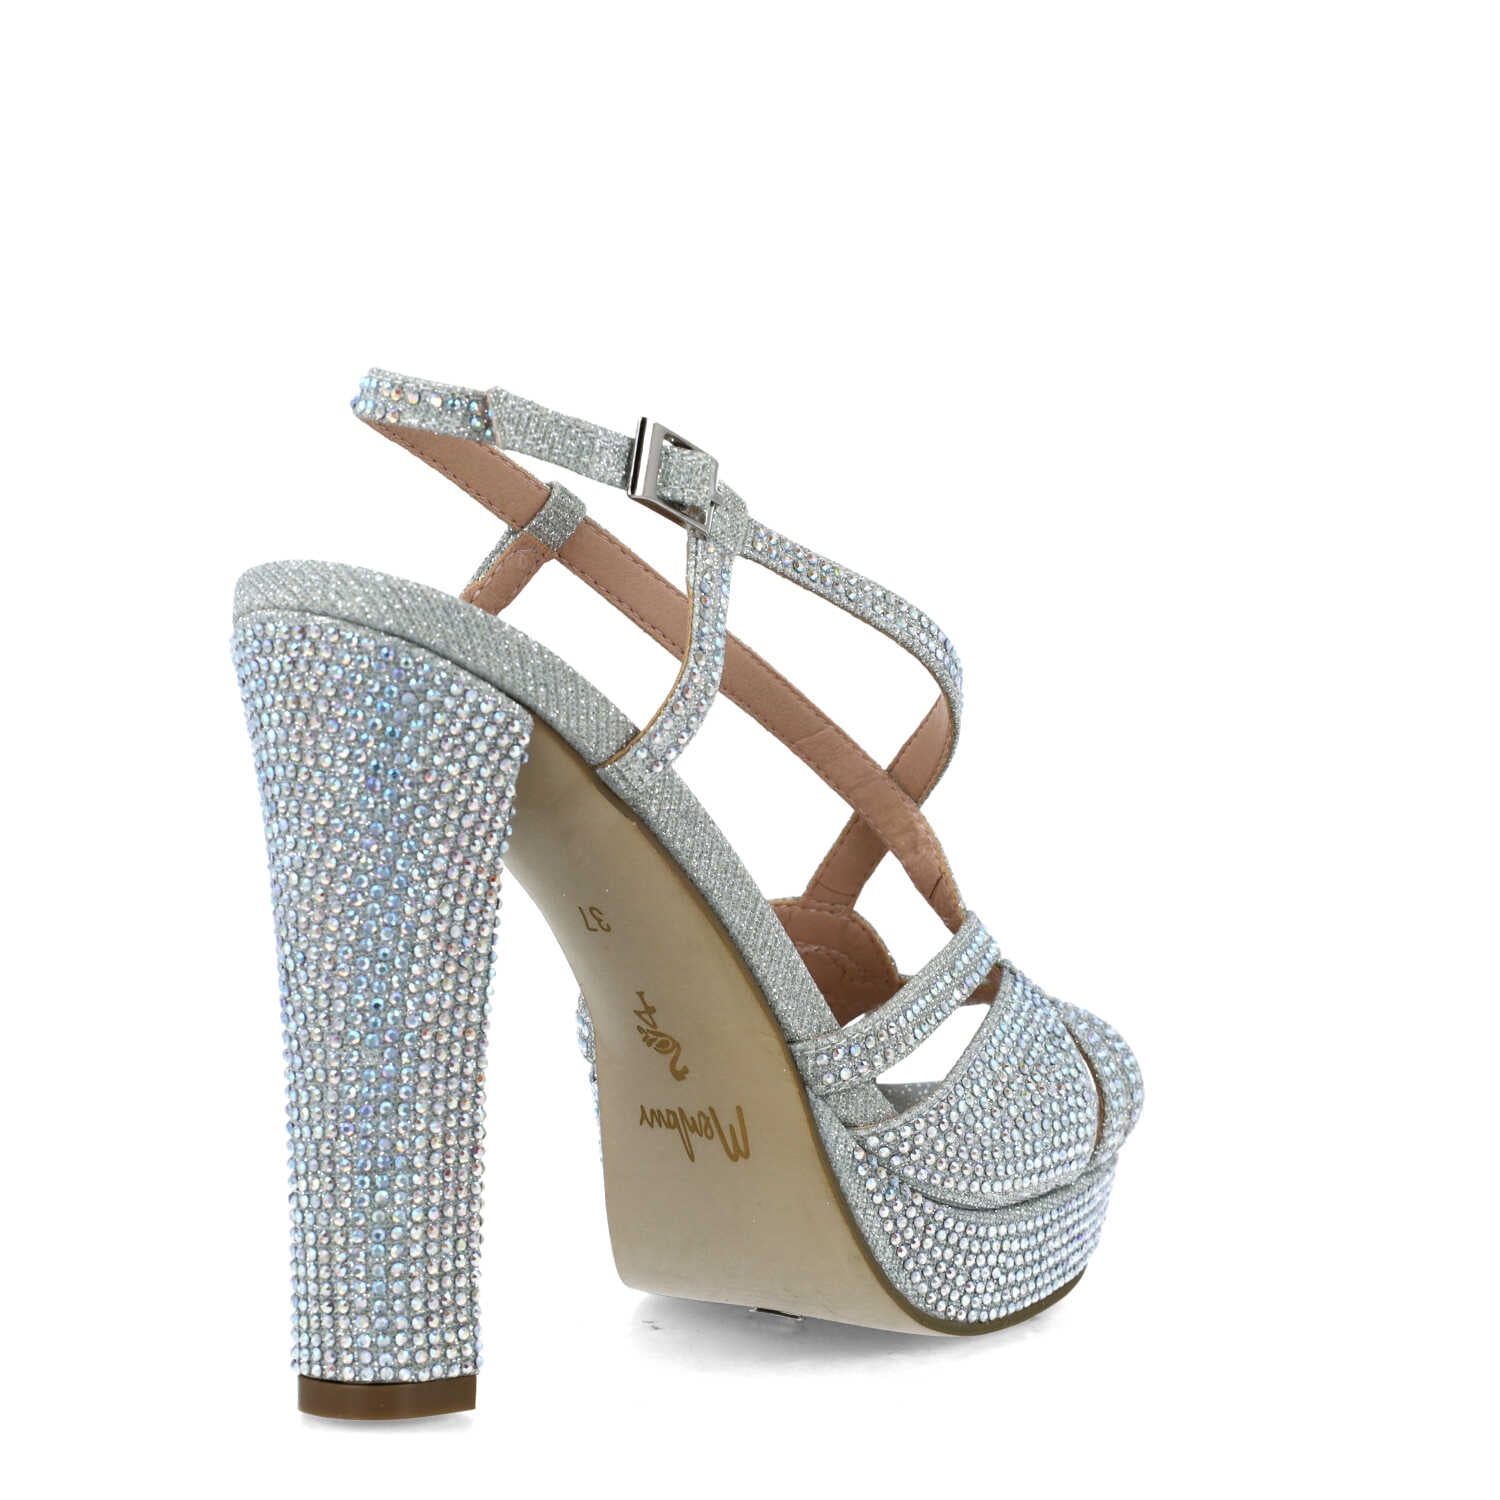 Embellished Silver Slingback High-Heel Sandals